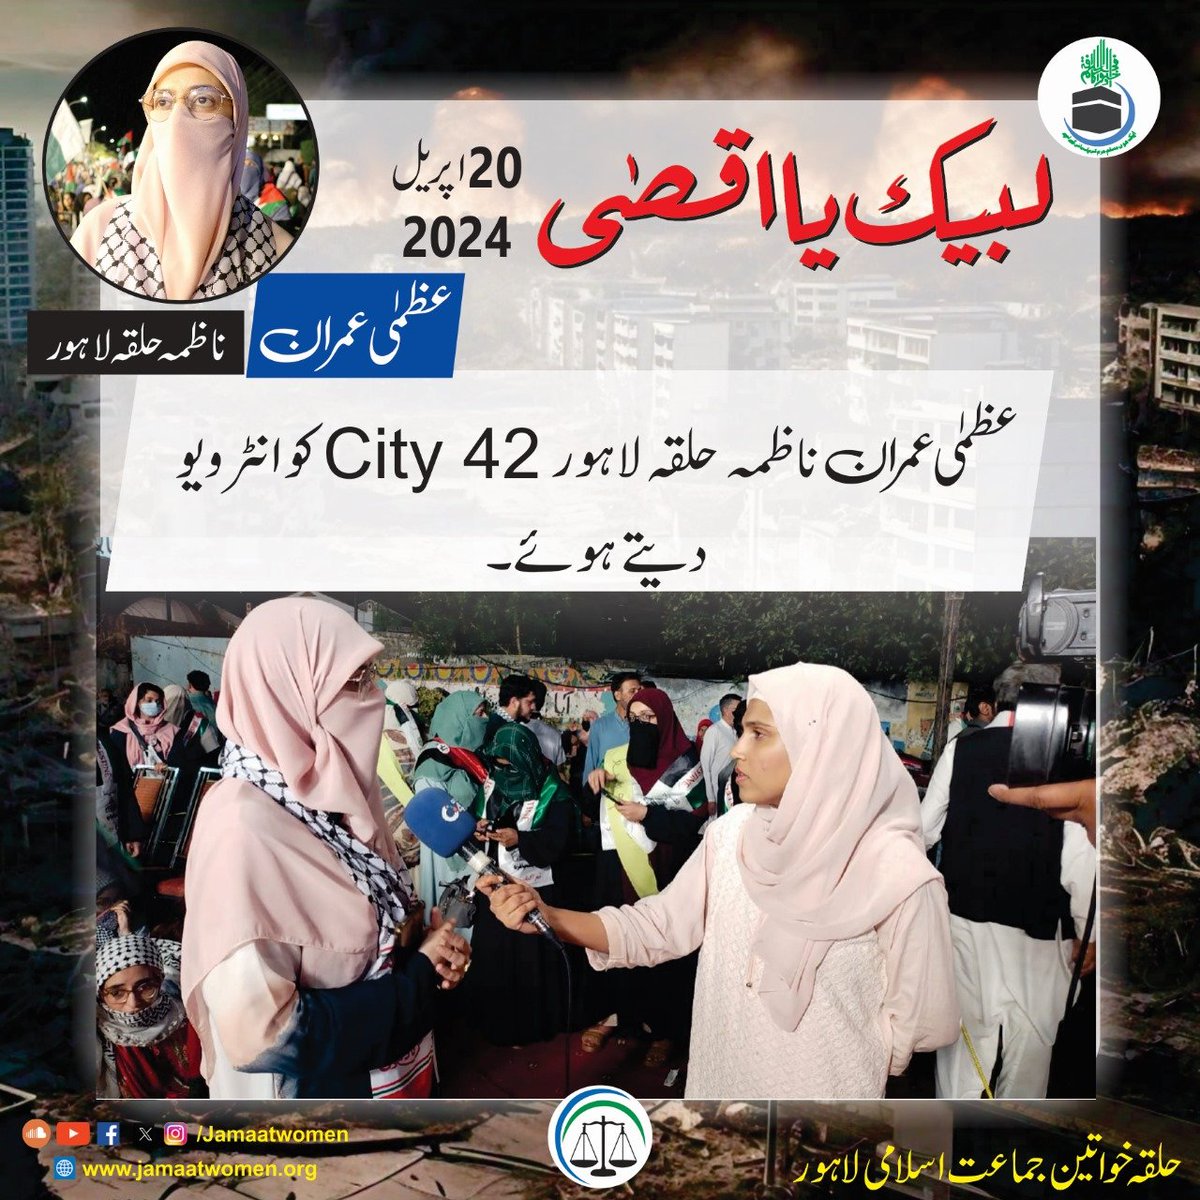 لبیک یا اقصیٰ مارچ کے دوران ناظمہ حلقہ لاہور عظمیٰ عمران City 42 کو انٹرویو دیتے ہوئے ۔🇵🇰⚖️🇵🇸
#جماعت_اسلامی_لاہور
#LabbaikYaAqsa #SupportPalestine #StandWithaqsa #HafizNaeemUrRehman #JamaatIslamiLahore #Lahore #Pakistan